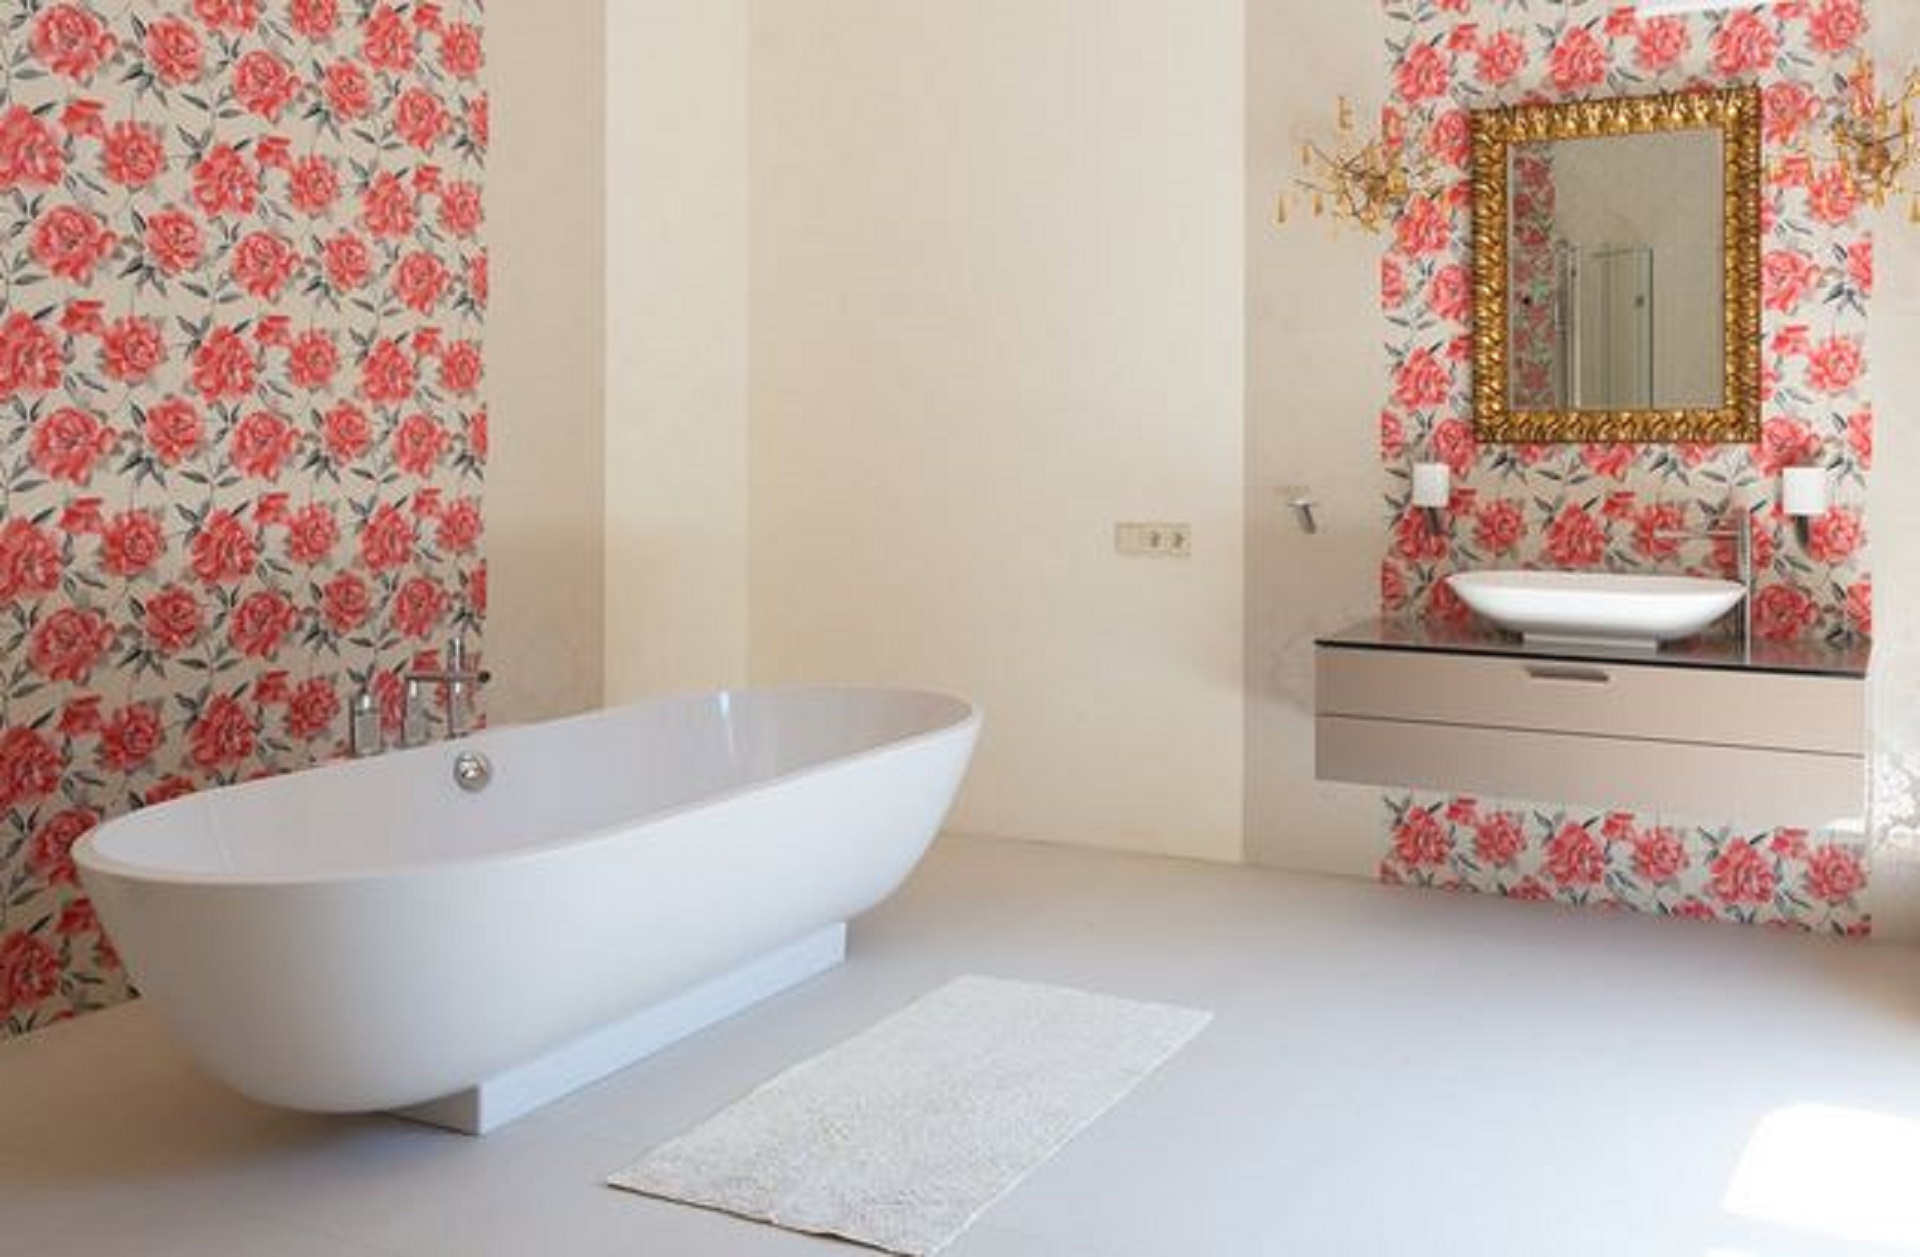 Personnalisation du papier peint : toutes les ambiances de salle de bains sont possibles